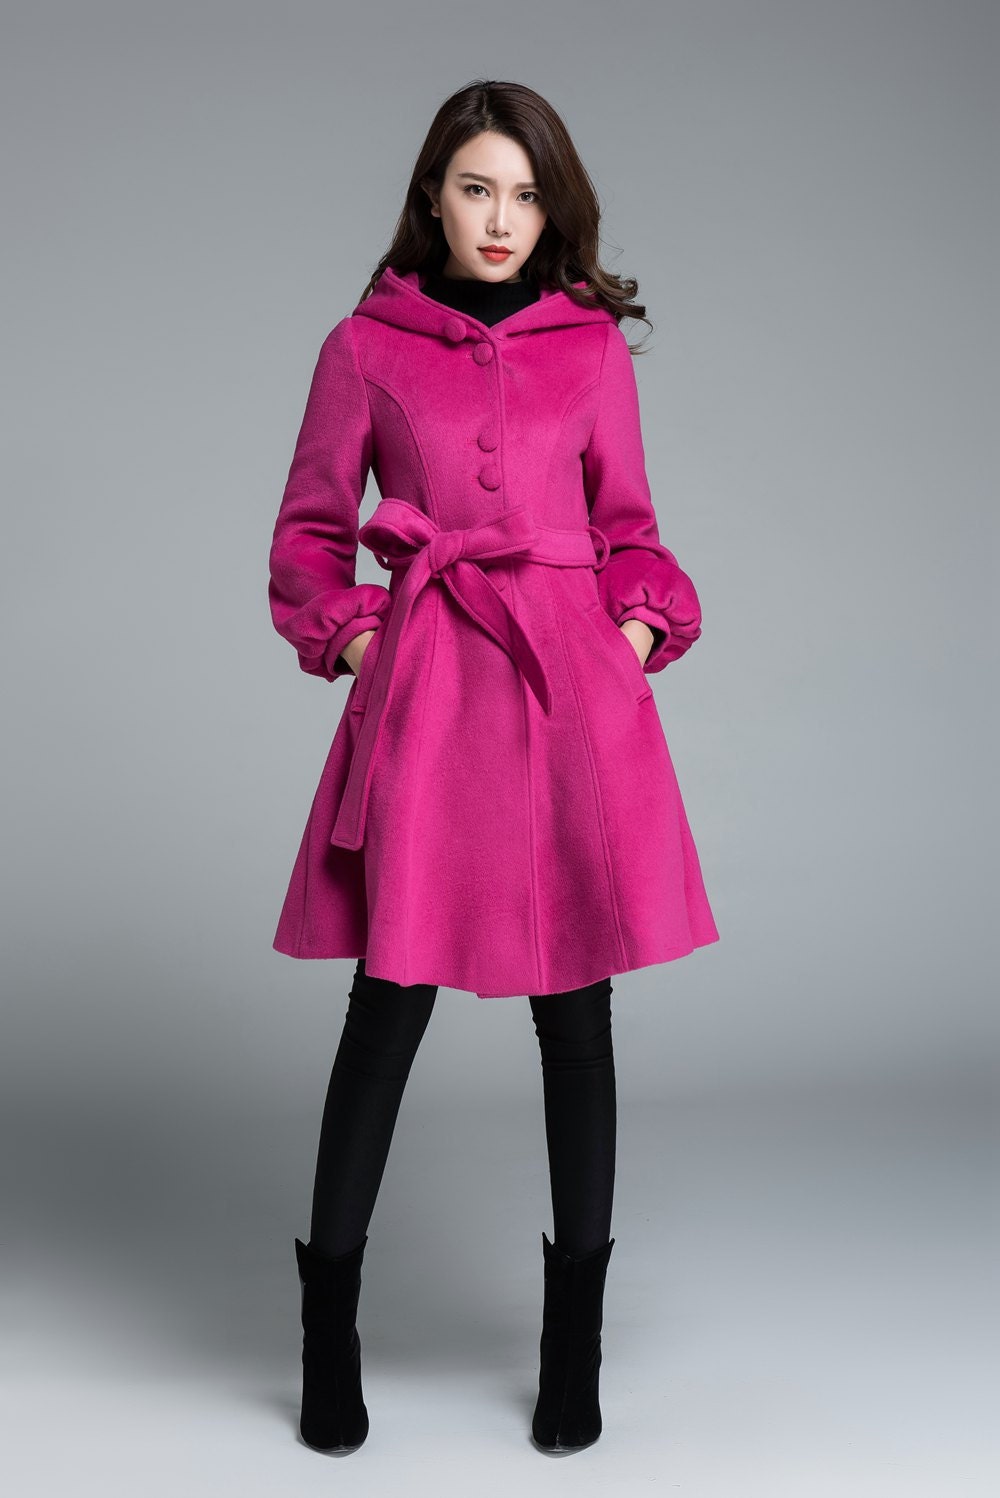 wool coat winter coat warm jacket winter street wear by xiaolizi